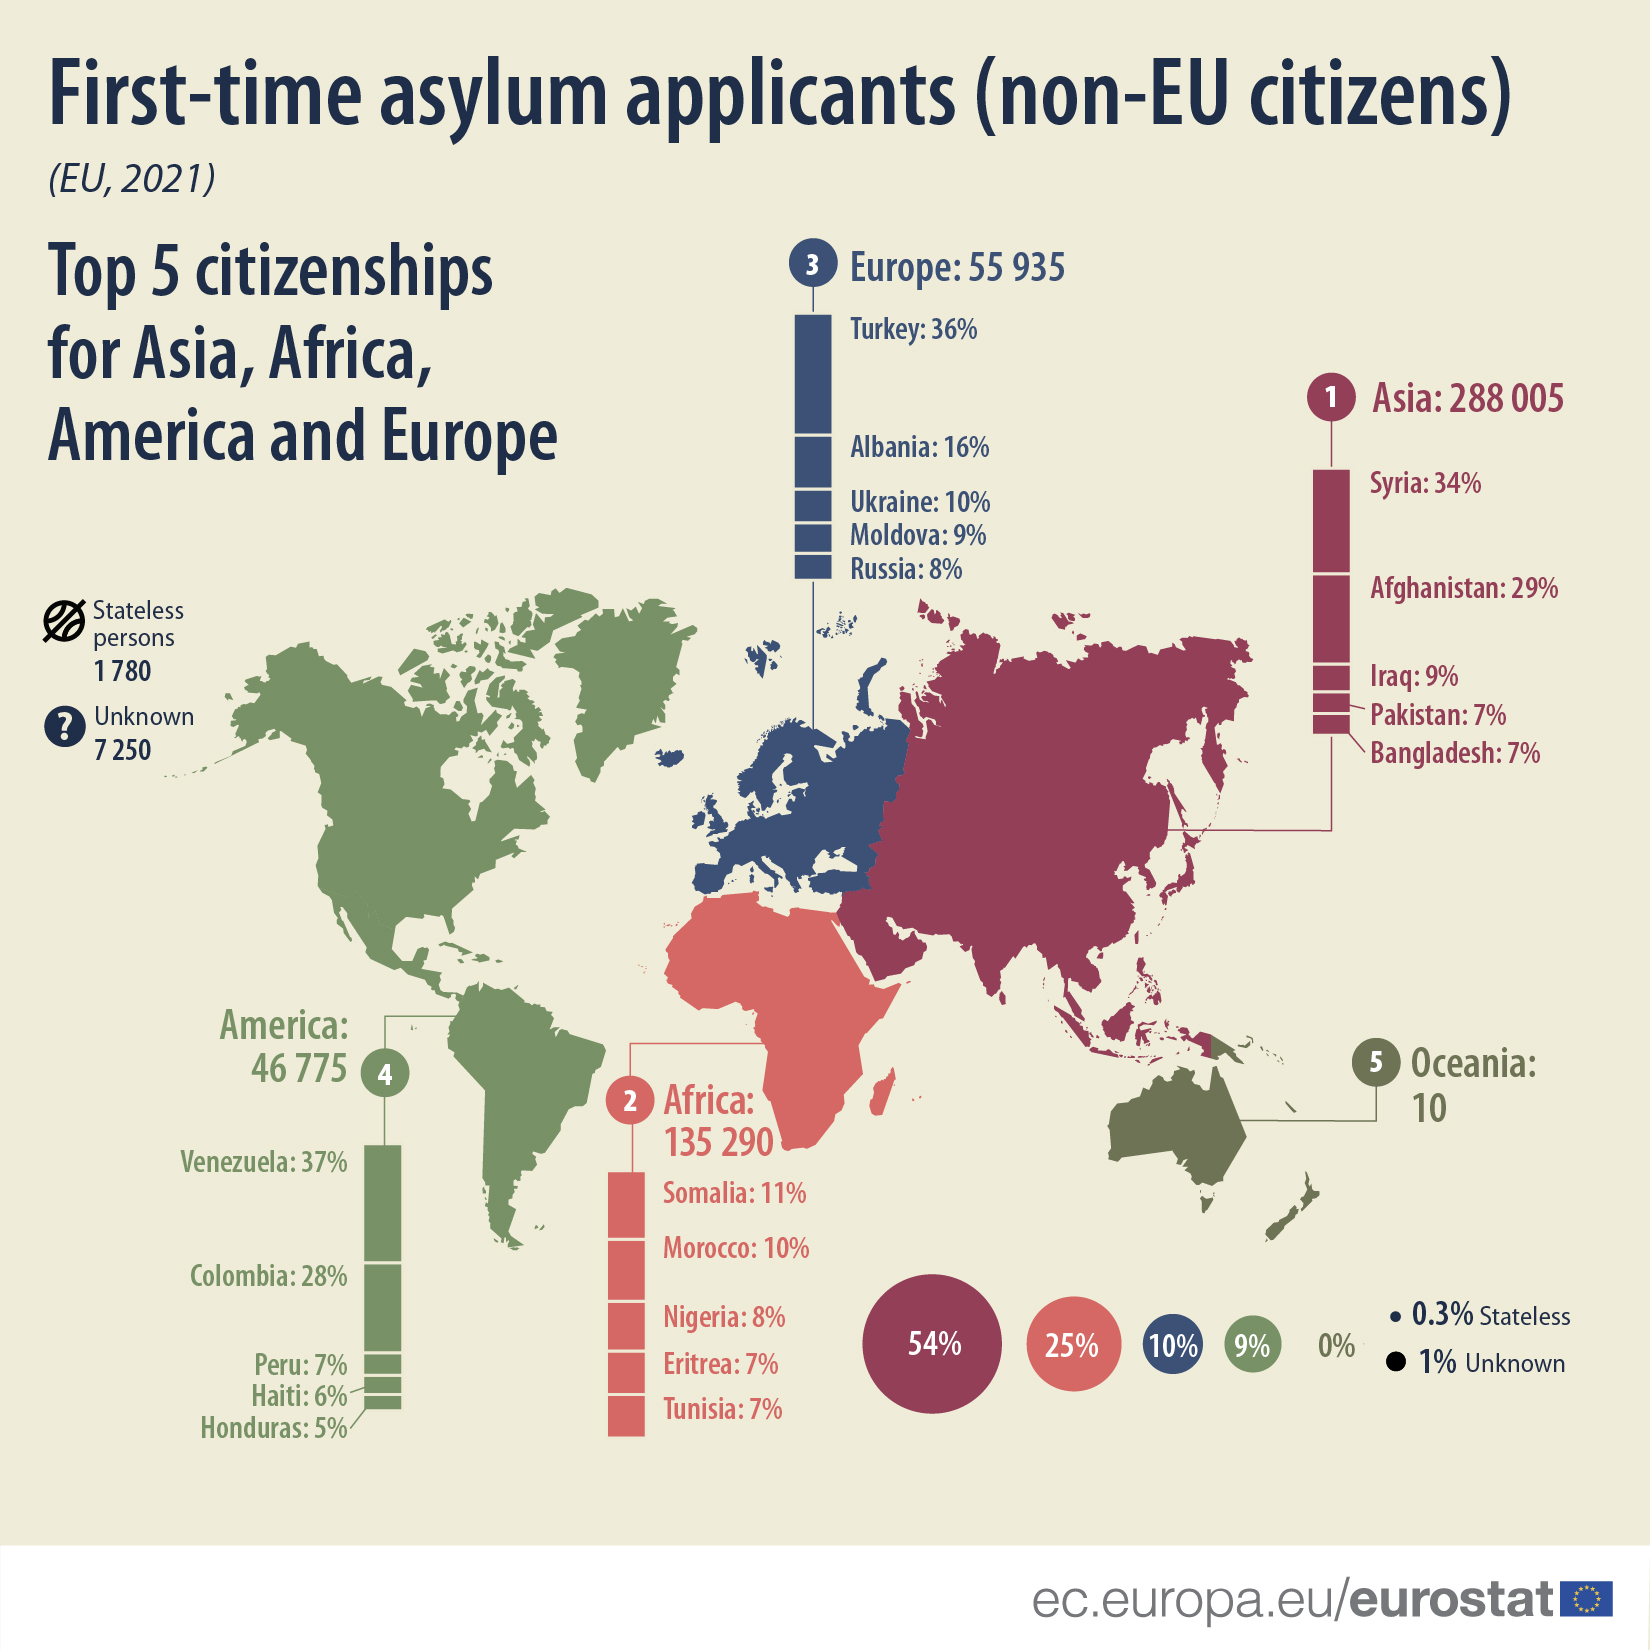 Aplikimet për azil nga shqiptarët në 2021, cila është “toka e premtuar” për ta